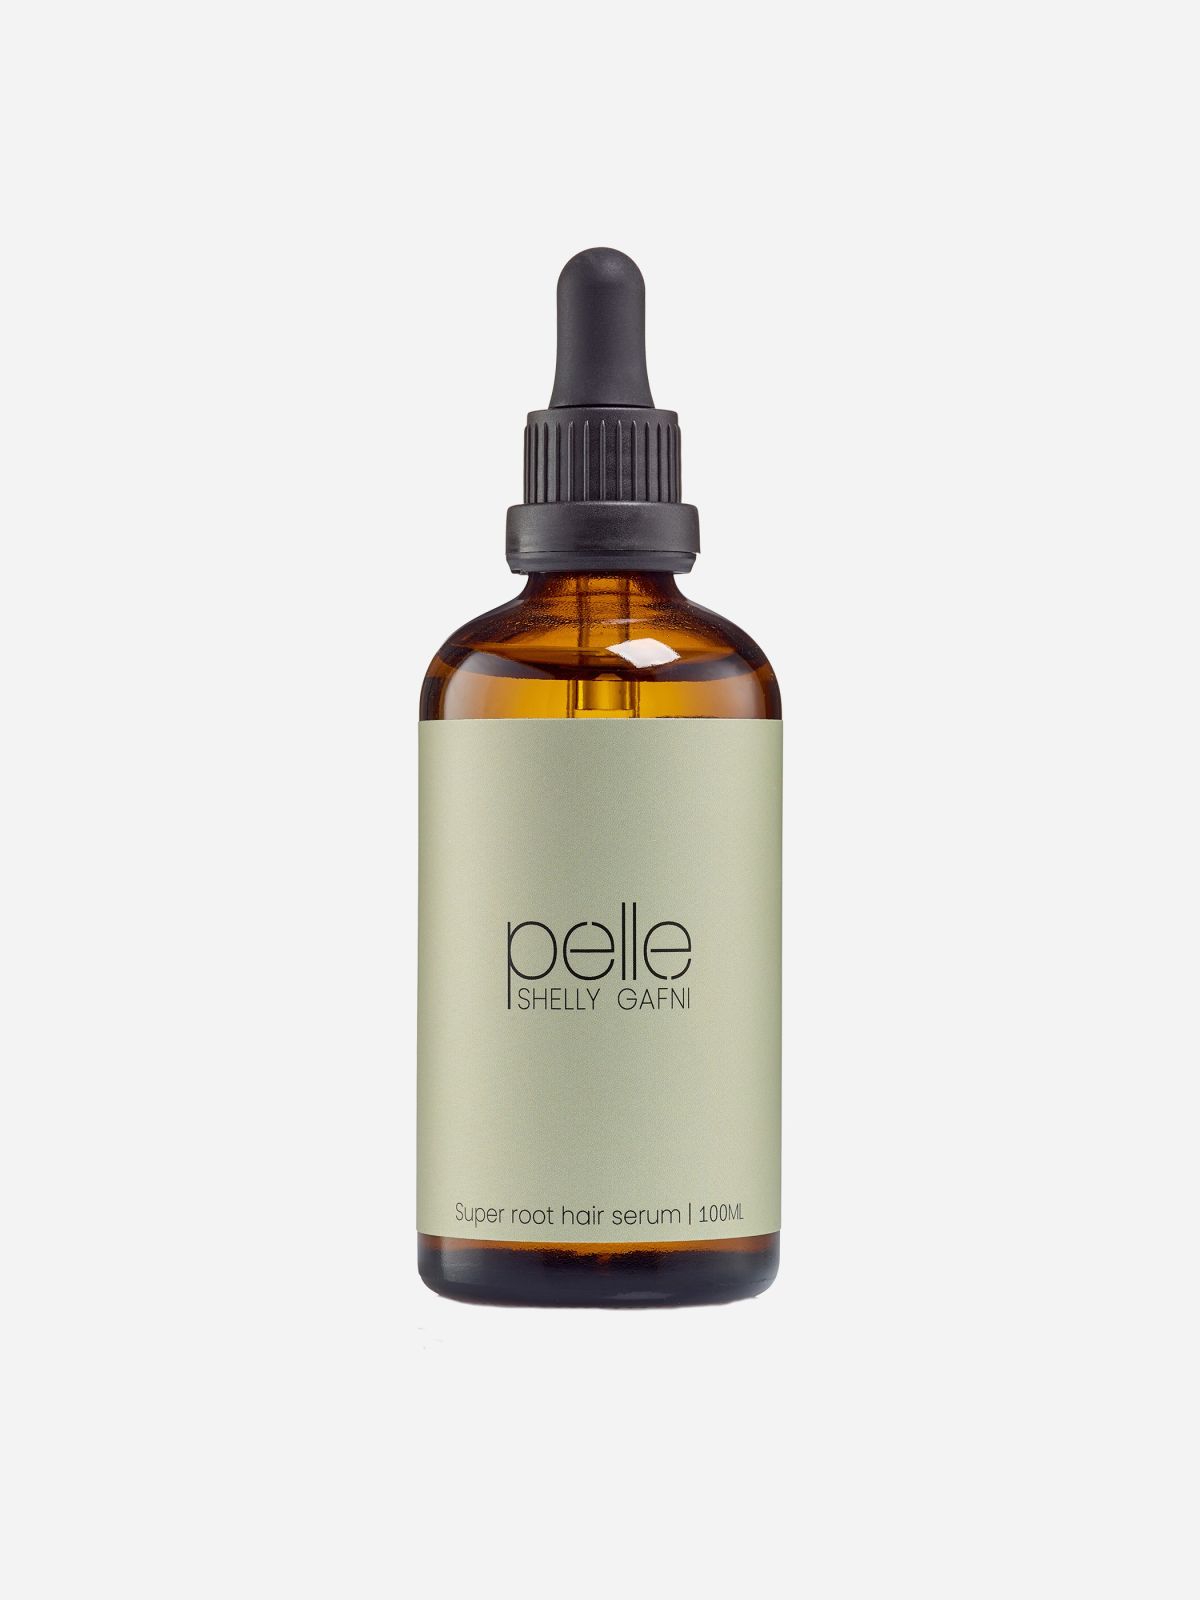  סרום נוזלי לקרקפת Super root hair serum של PELLE